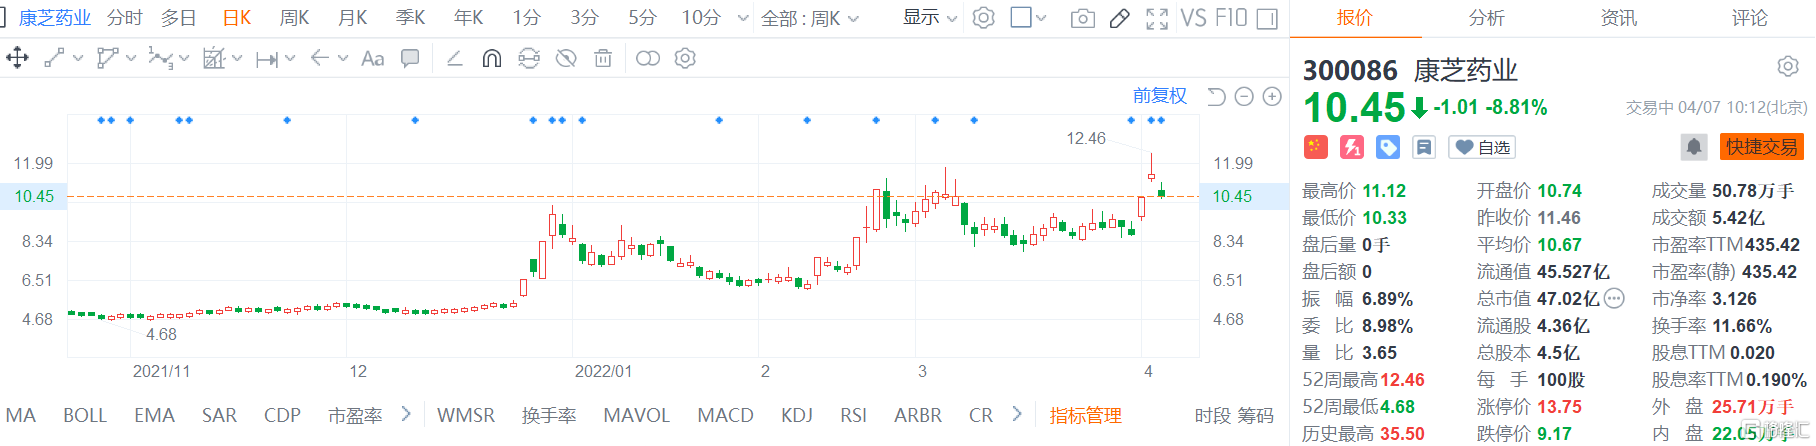 康芝药业(300086.SZ)股价弱势震荡 现报10.45元跌幅8.8%